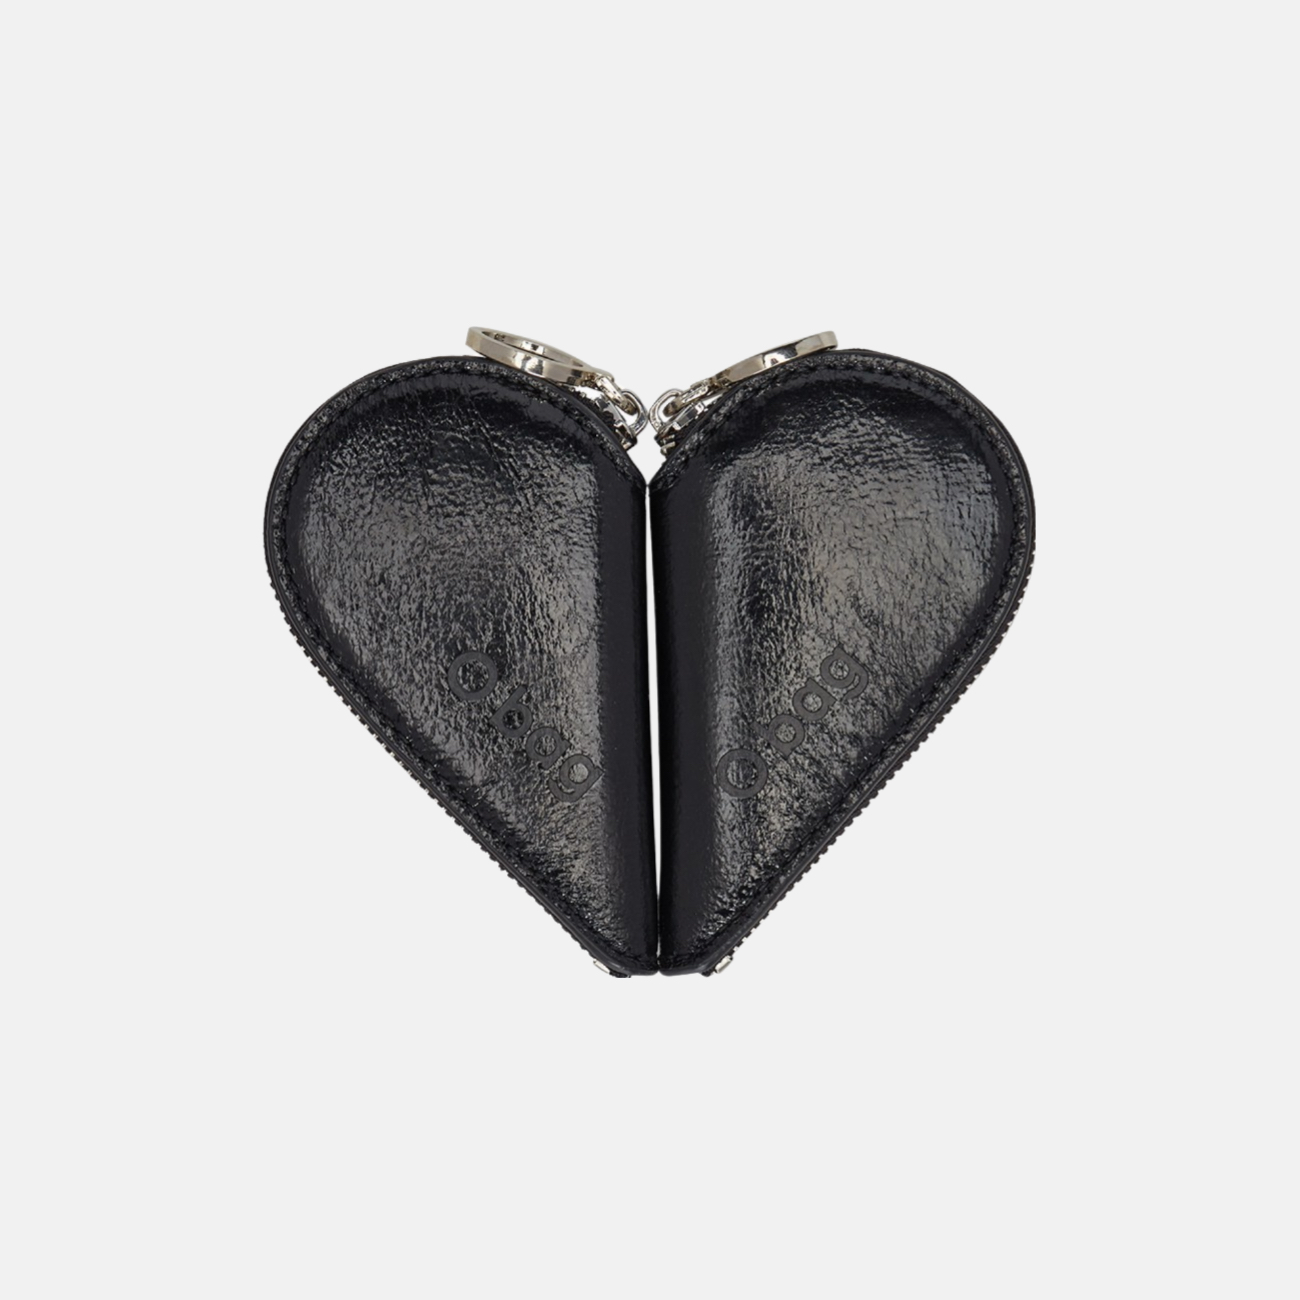 Caroline bölünebilir kalp şekilli ışıltılı siyah bozuk para cüzdanı